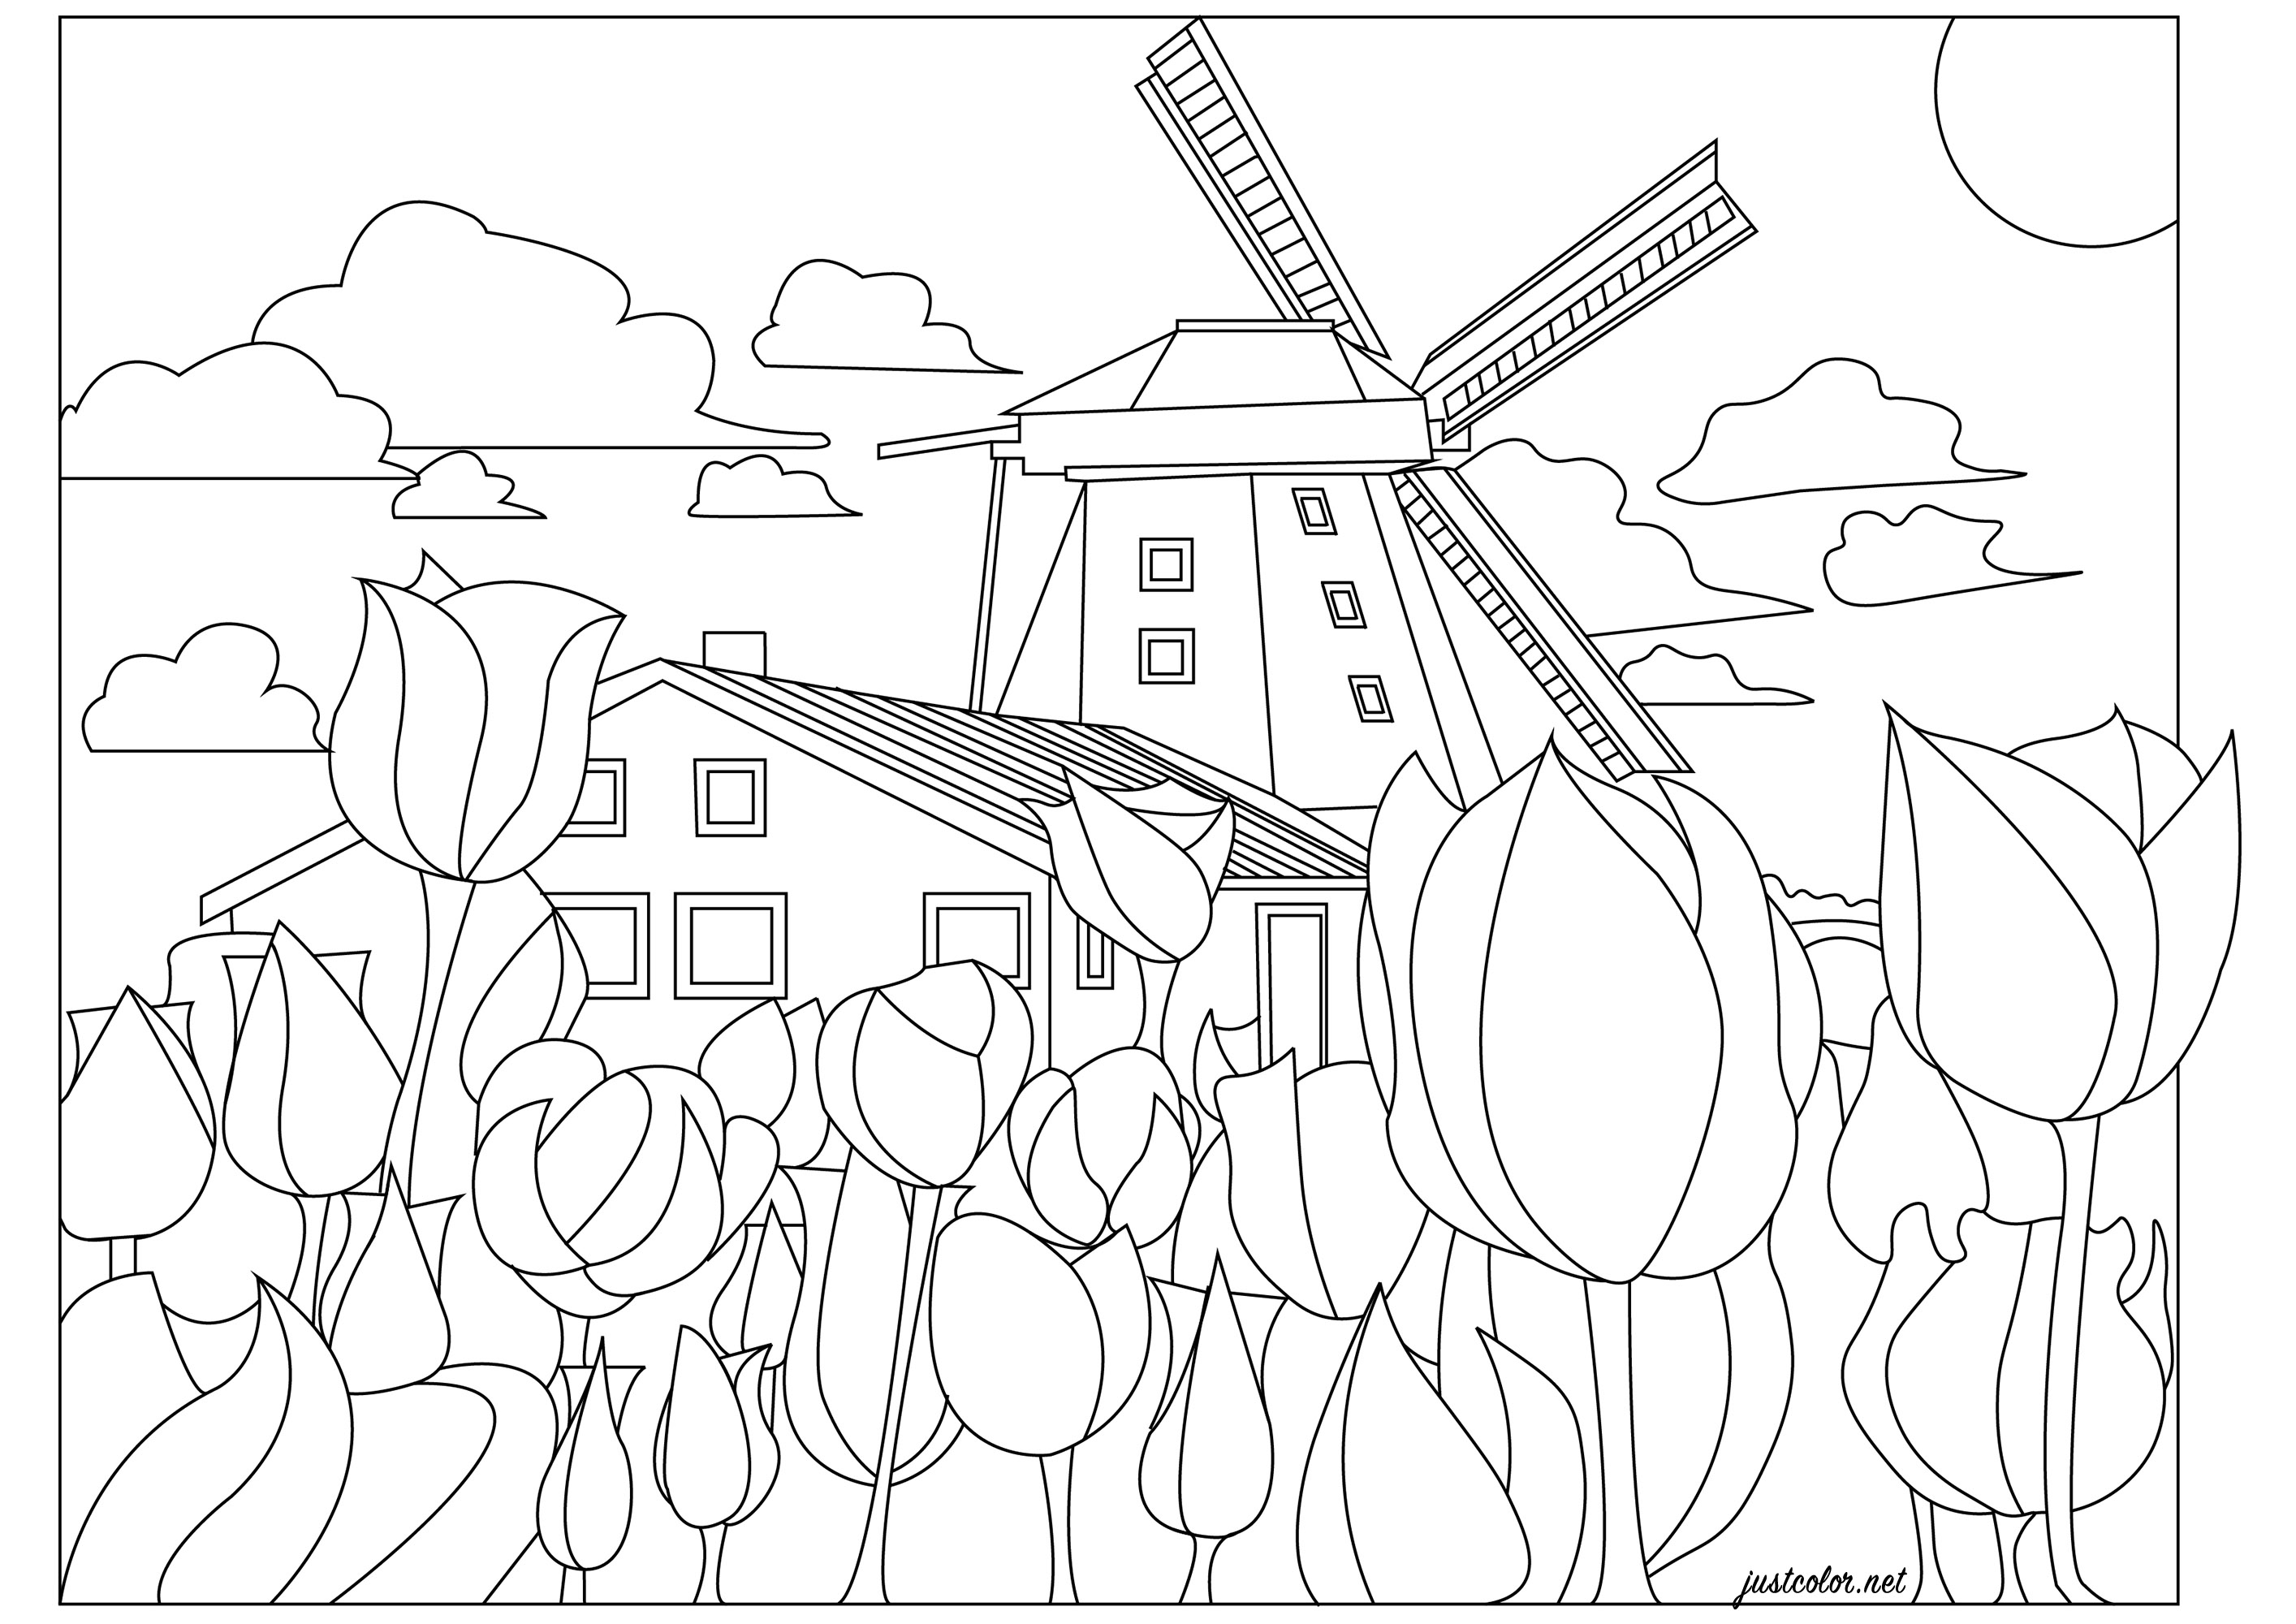 Holanda, el país de los molinos y los tulipanes. ¡La campiña holandesa en primavera! Una página para colorear con tulipanes de mil colores (a elegir), un molino de viento y una casa típica holandesa, Artista : Morgan